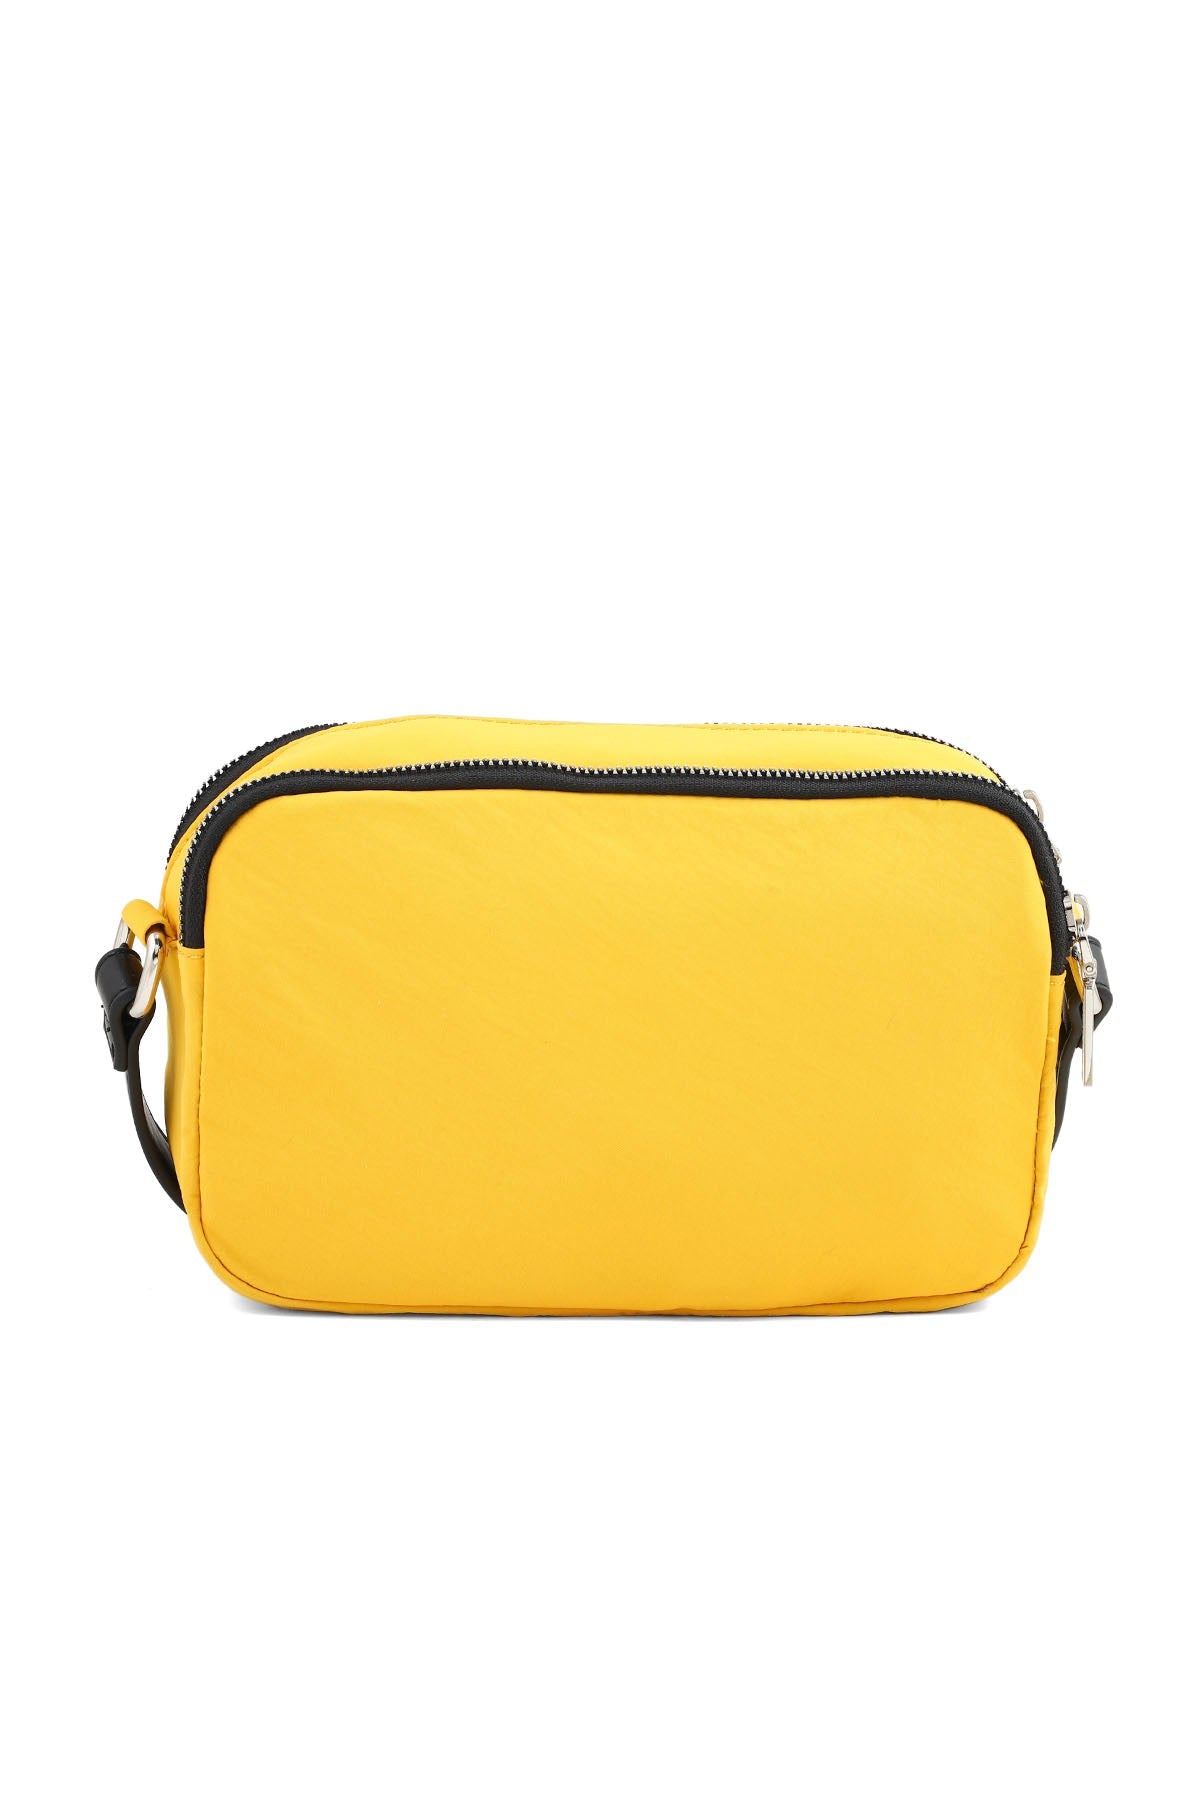 Cross Shoulder Bags B15014-Yellow